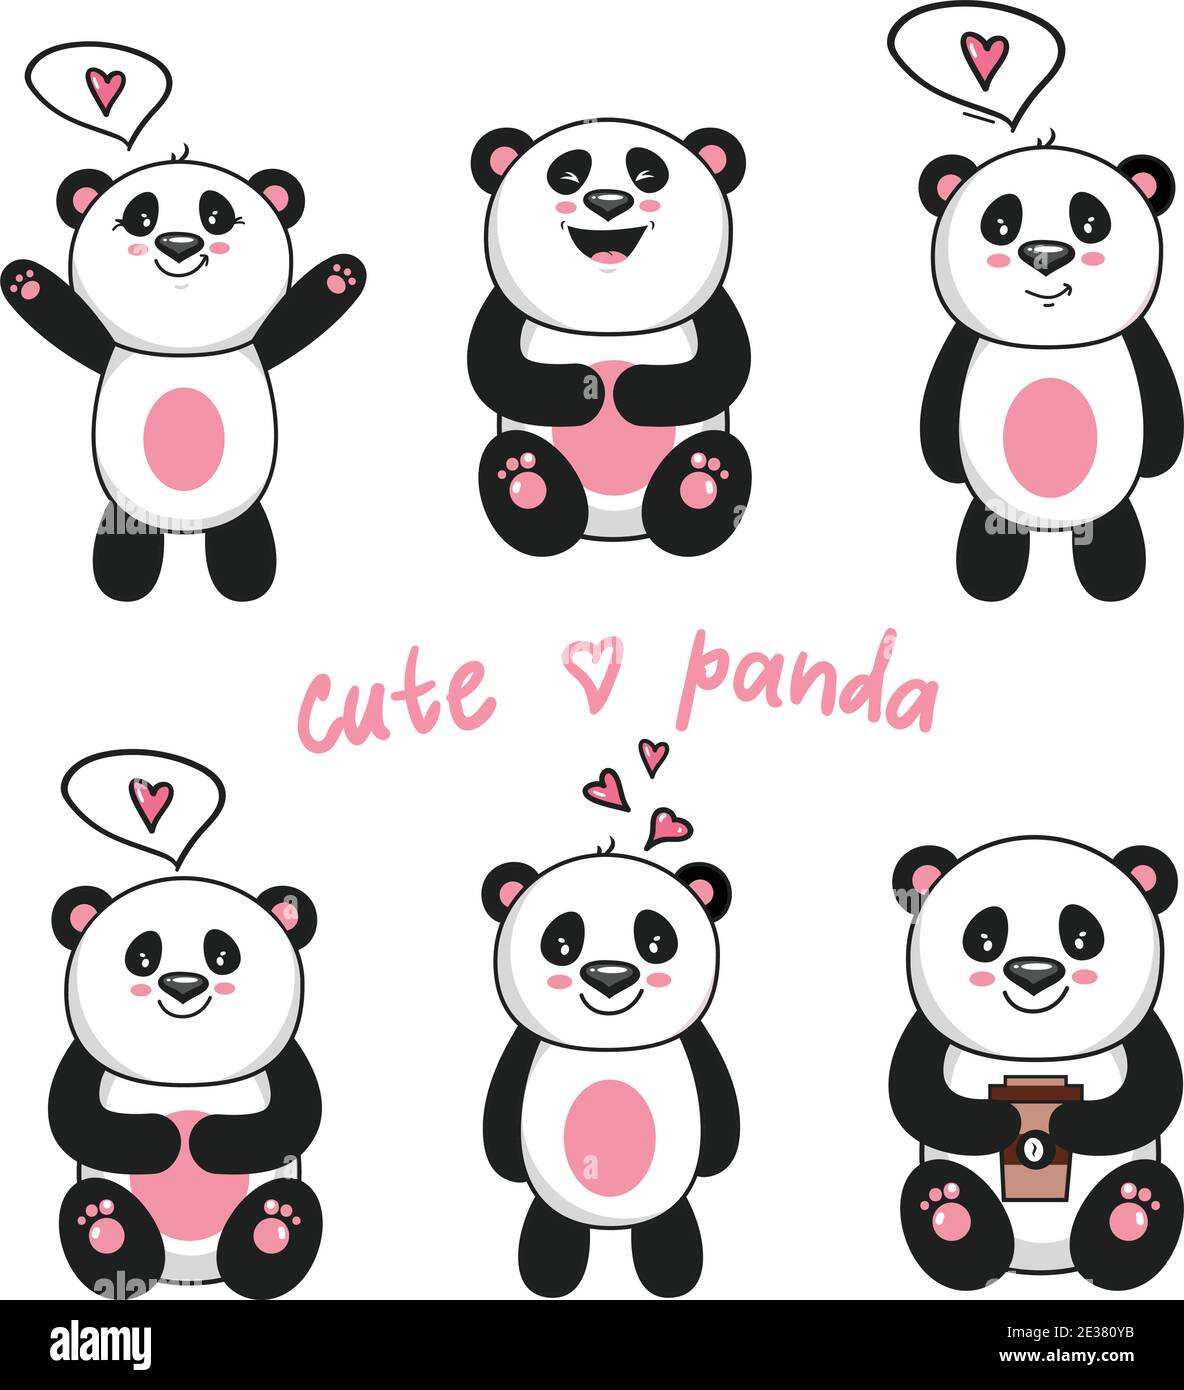 Niedliche Pandas. Spielzeug Tiere chinesische Symbole Panda tragen liebenswert lustig Baby Maskottchen Vektor-Charaktere Sammlung im Cartoon-Stil. Abbildung der Pfanne Stock Vektor